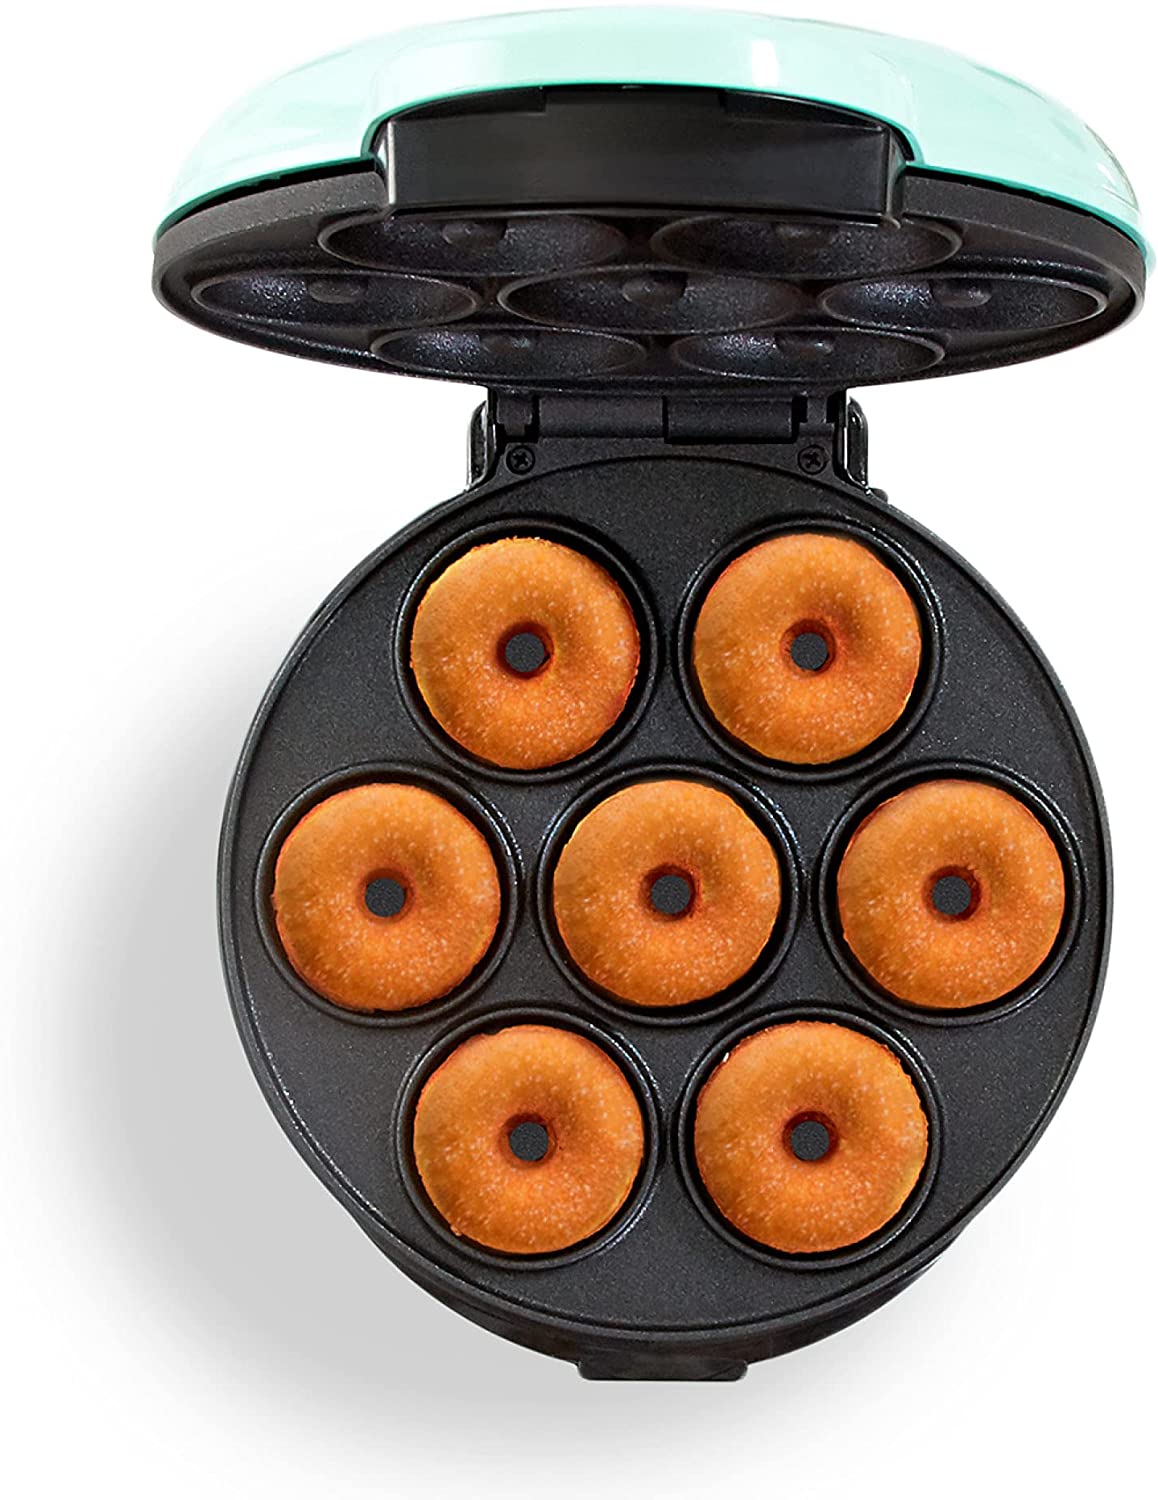 Dash mini donut maker.